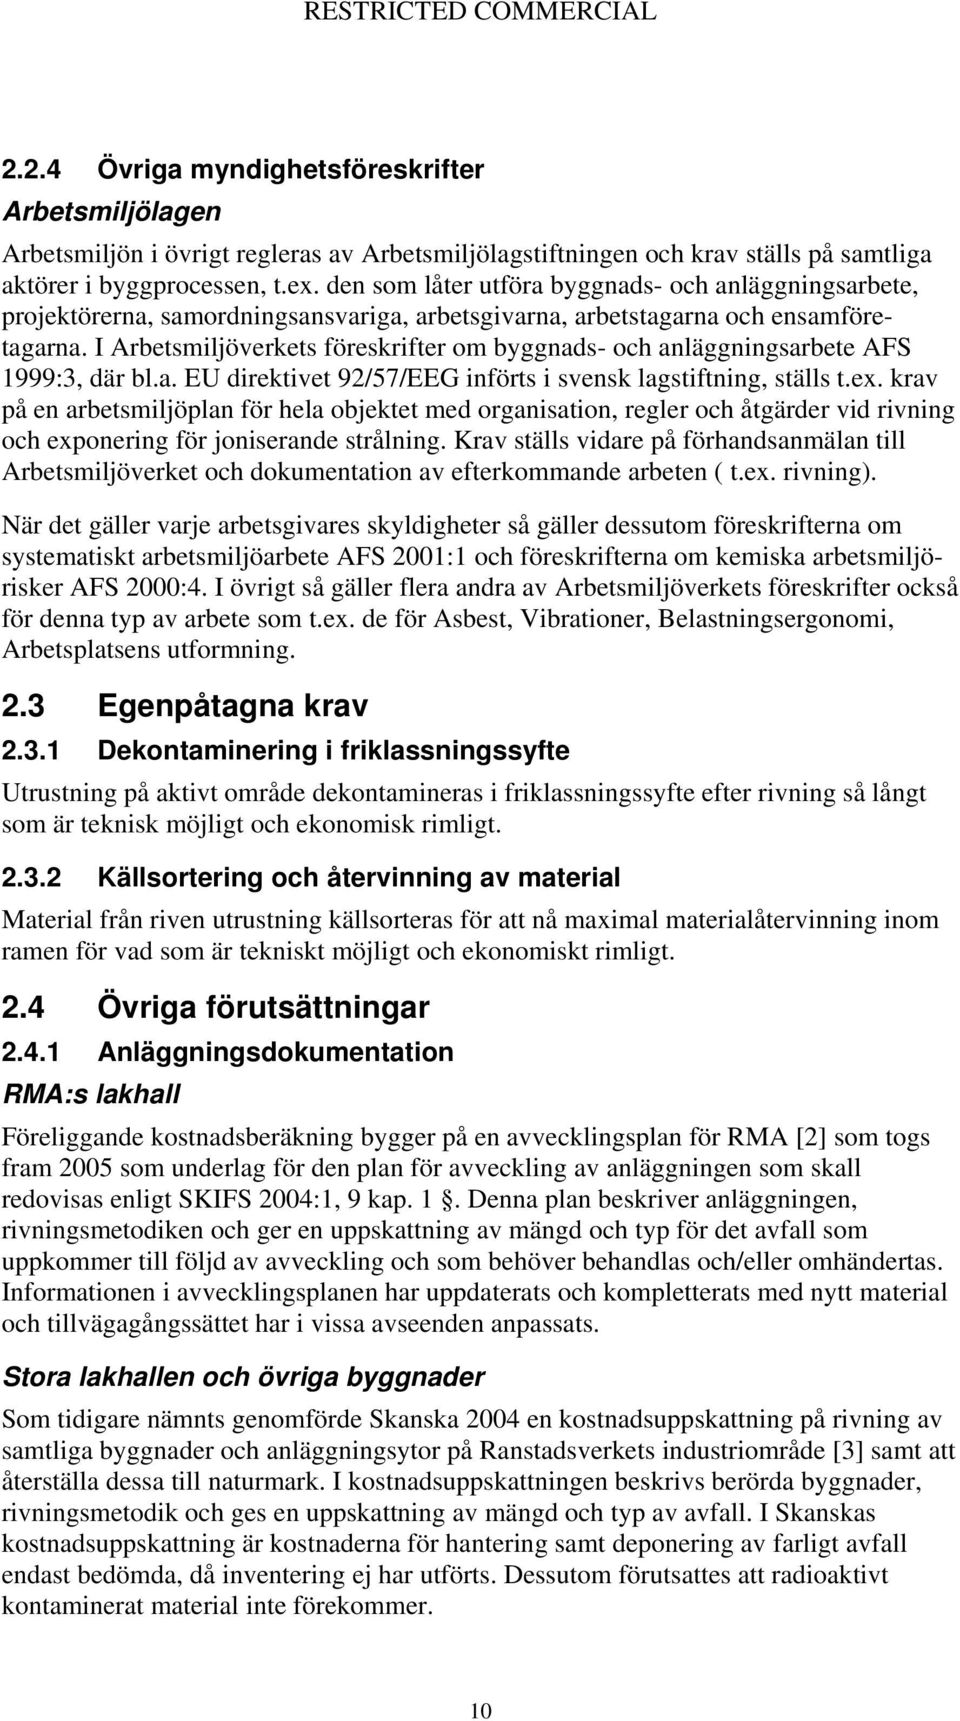 I Arbetsmiljöverkets föreskrifter om byggnads- och anläggningsarbete AFS 1999:3, där bl.a. EU direktivet 92/57/EEG införts i svensk lagstiftning, ställs t.ex.